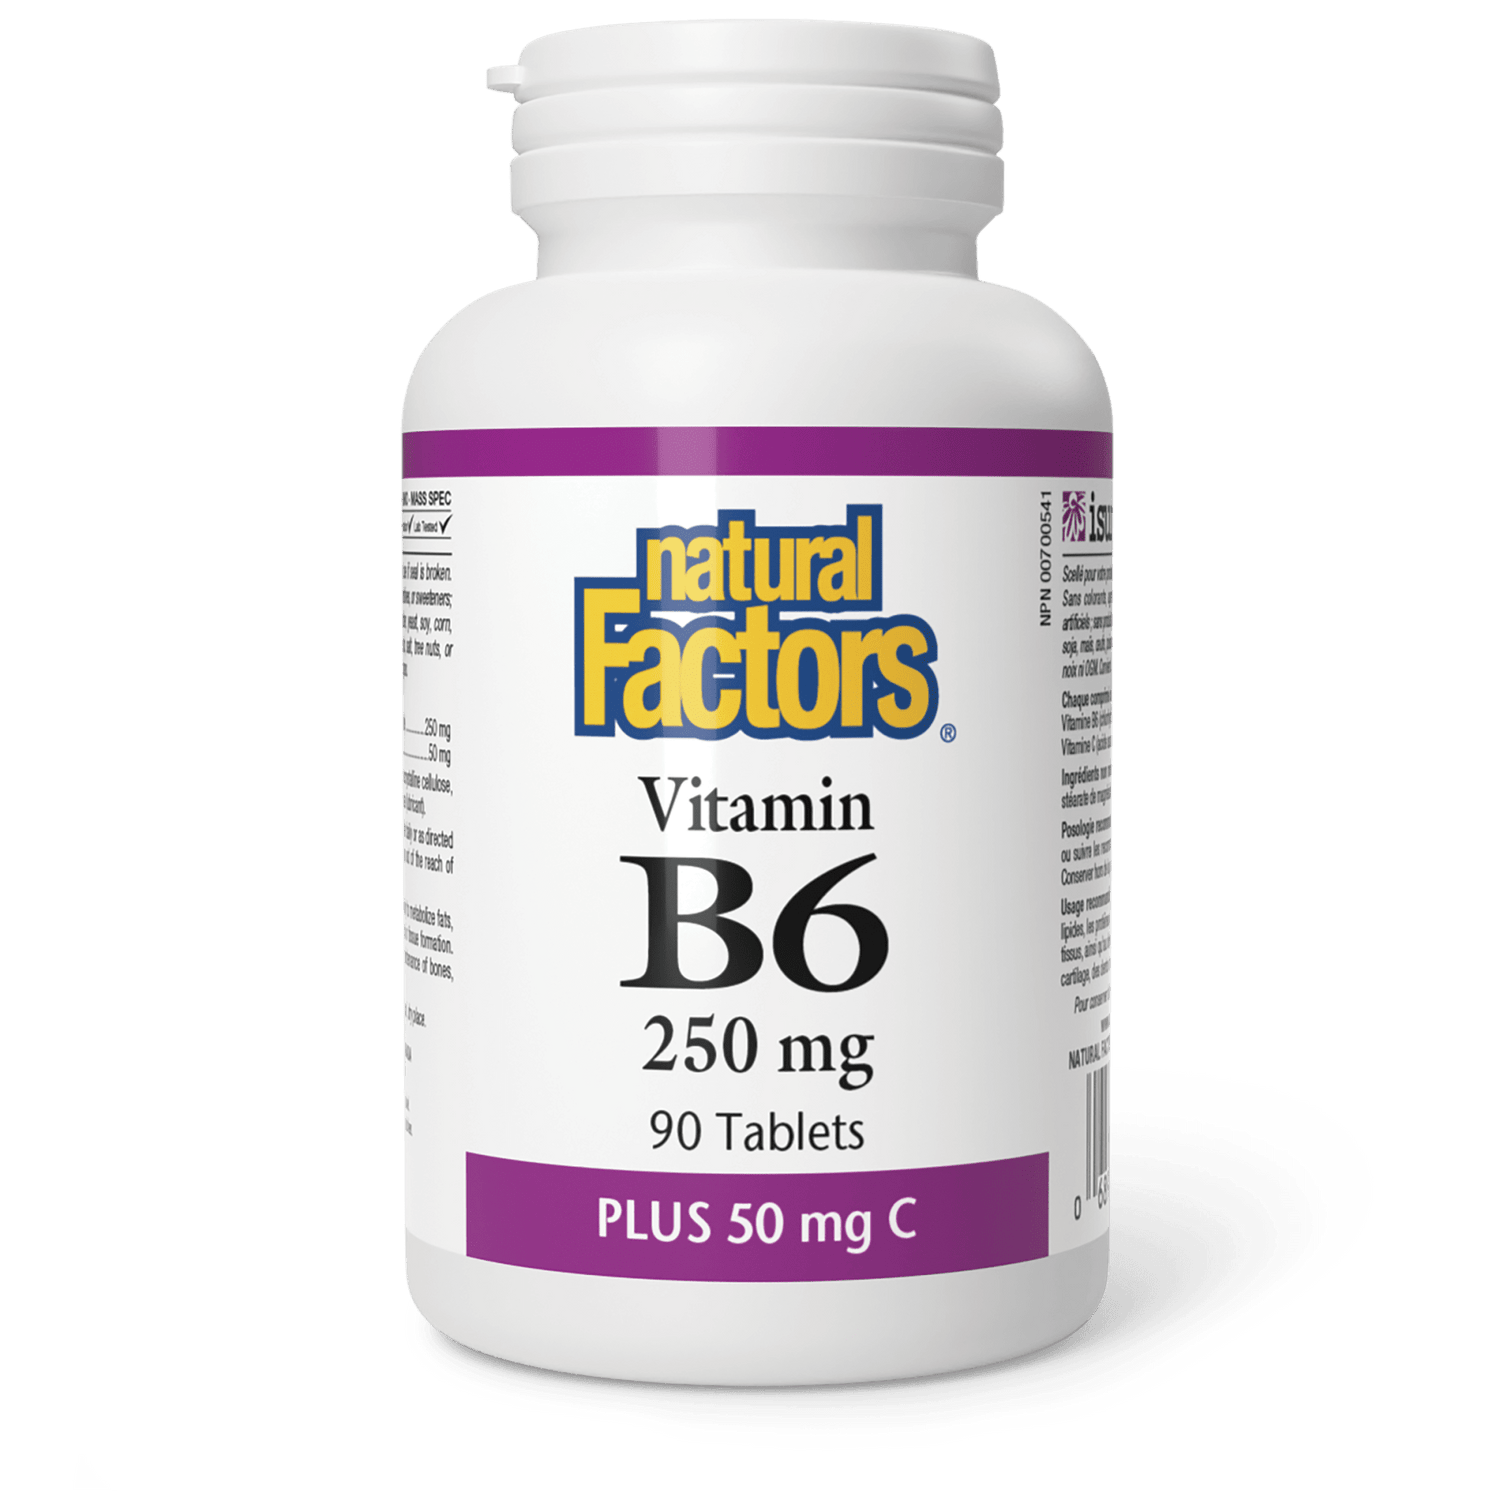 Vitamin B6 250 mg Plus 50 mg C, Natural Factors|v|image|1232